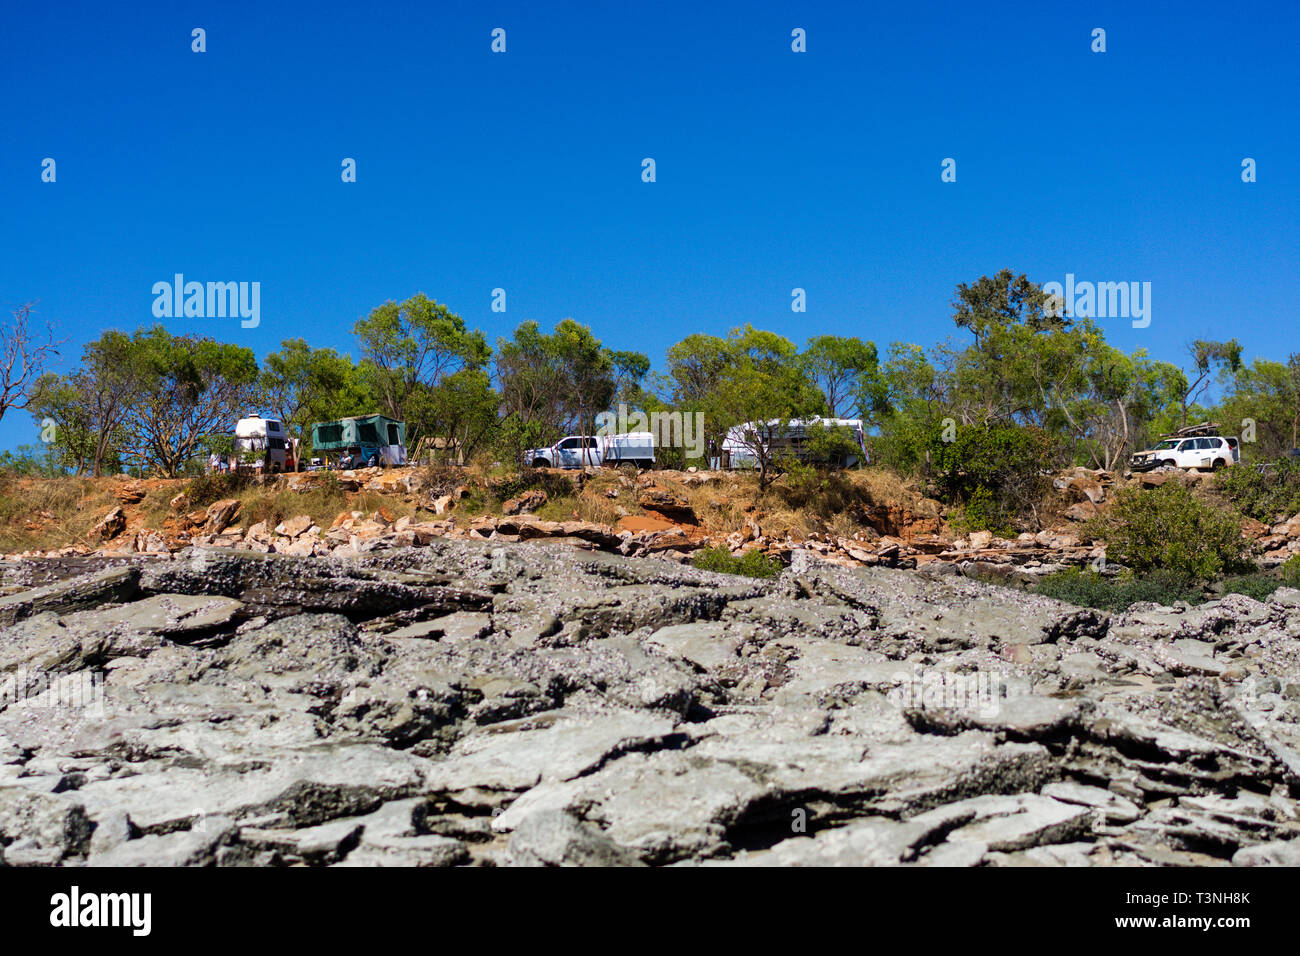 Caravanners e camper sul promontorio roccioso, Cape Leveque, Dampier Peninsula, Australia occidentale Foto Stock